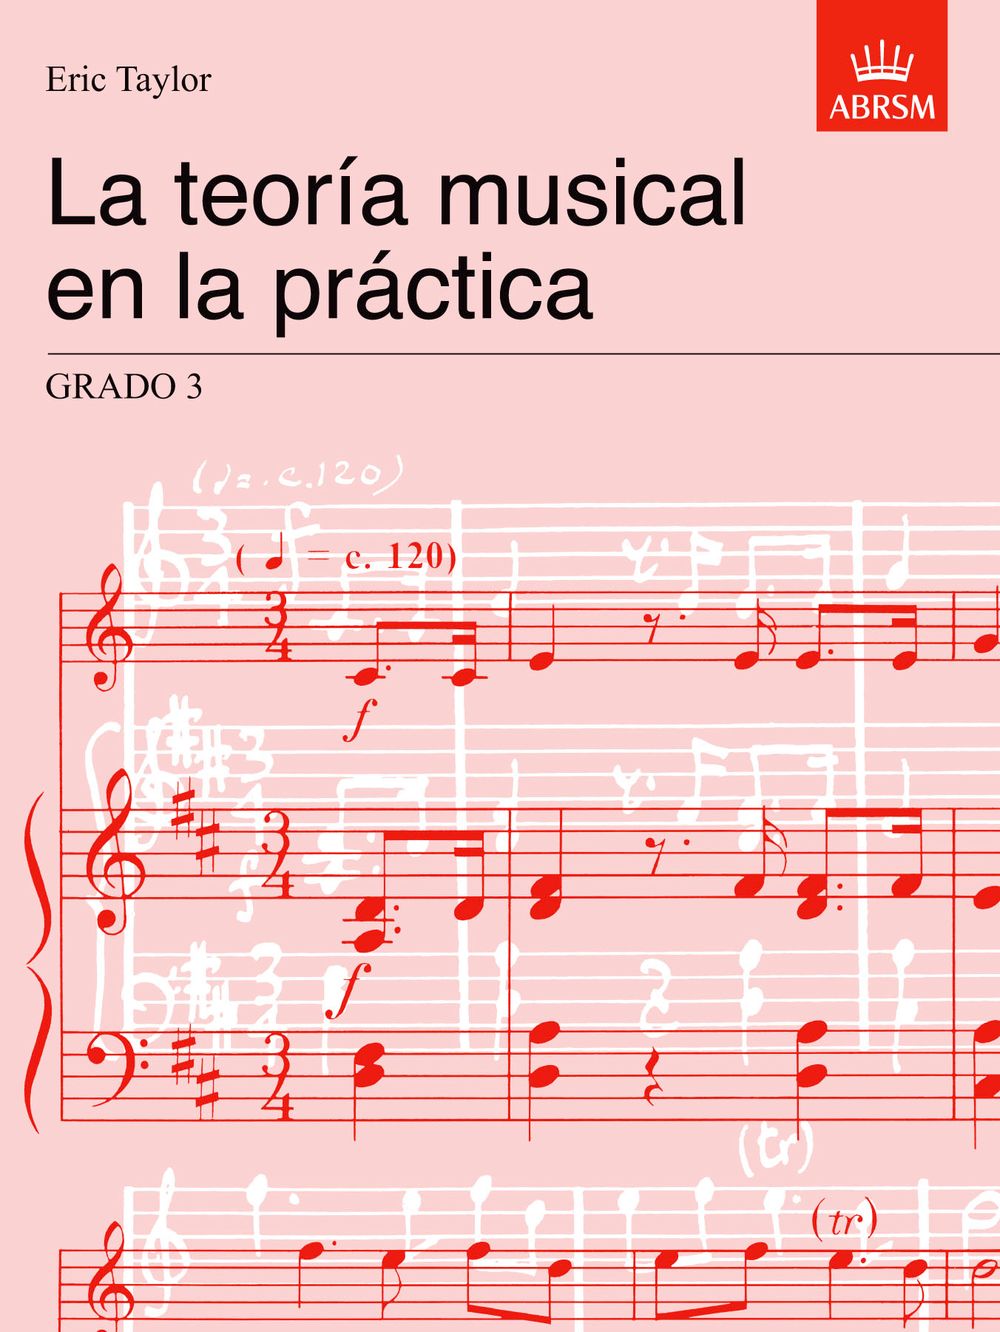 Eric Taylor: La teoria musical en la practica Grado 3: Theory